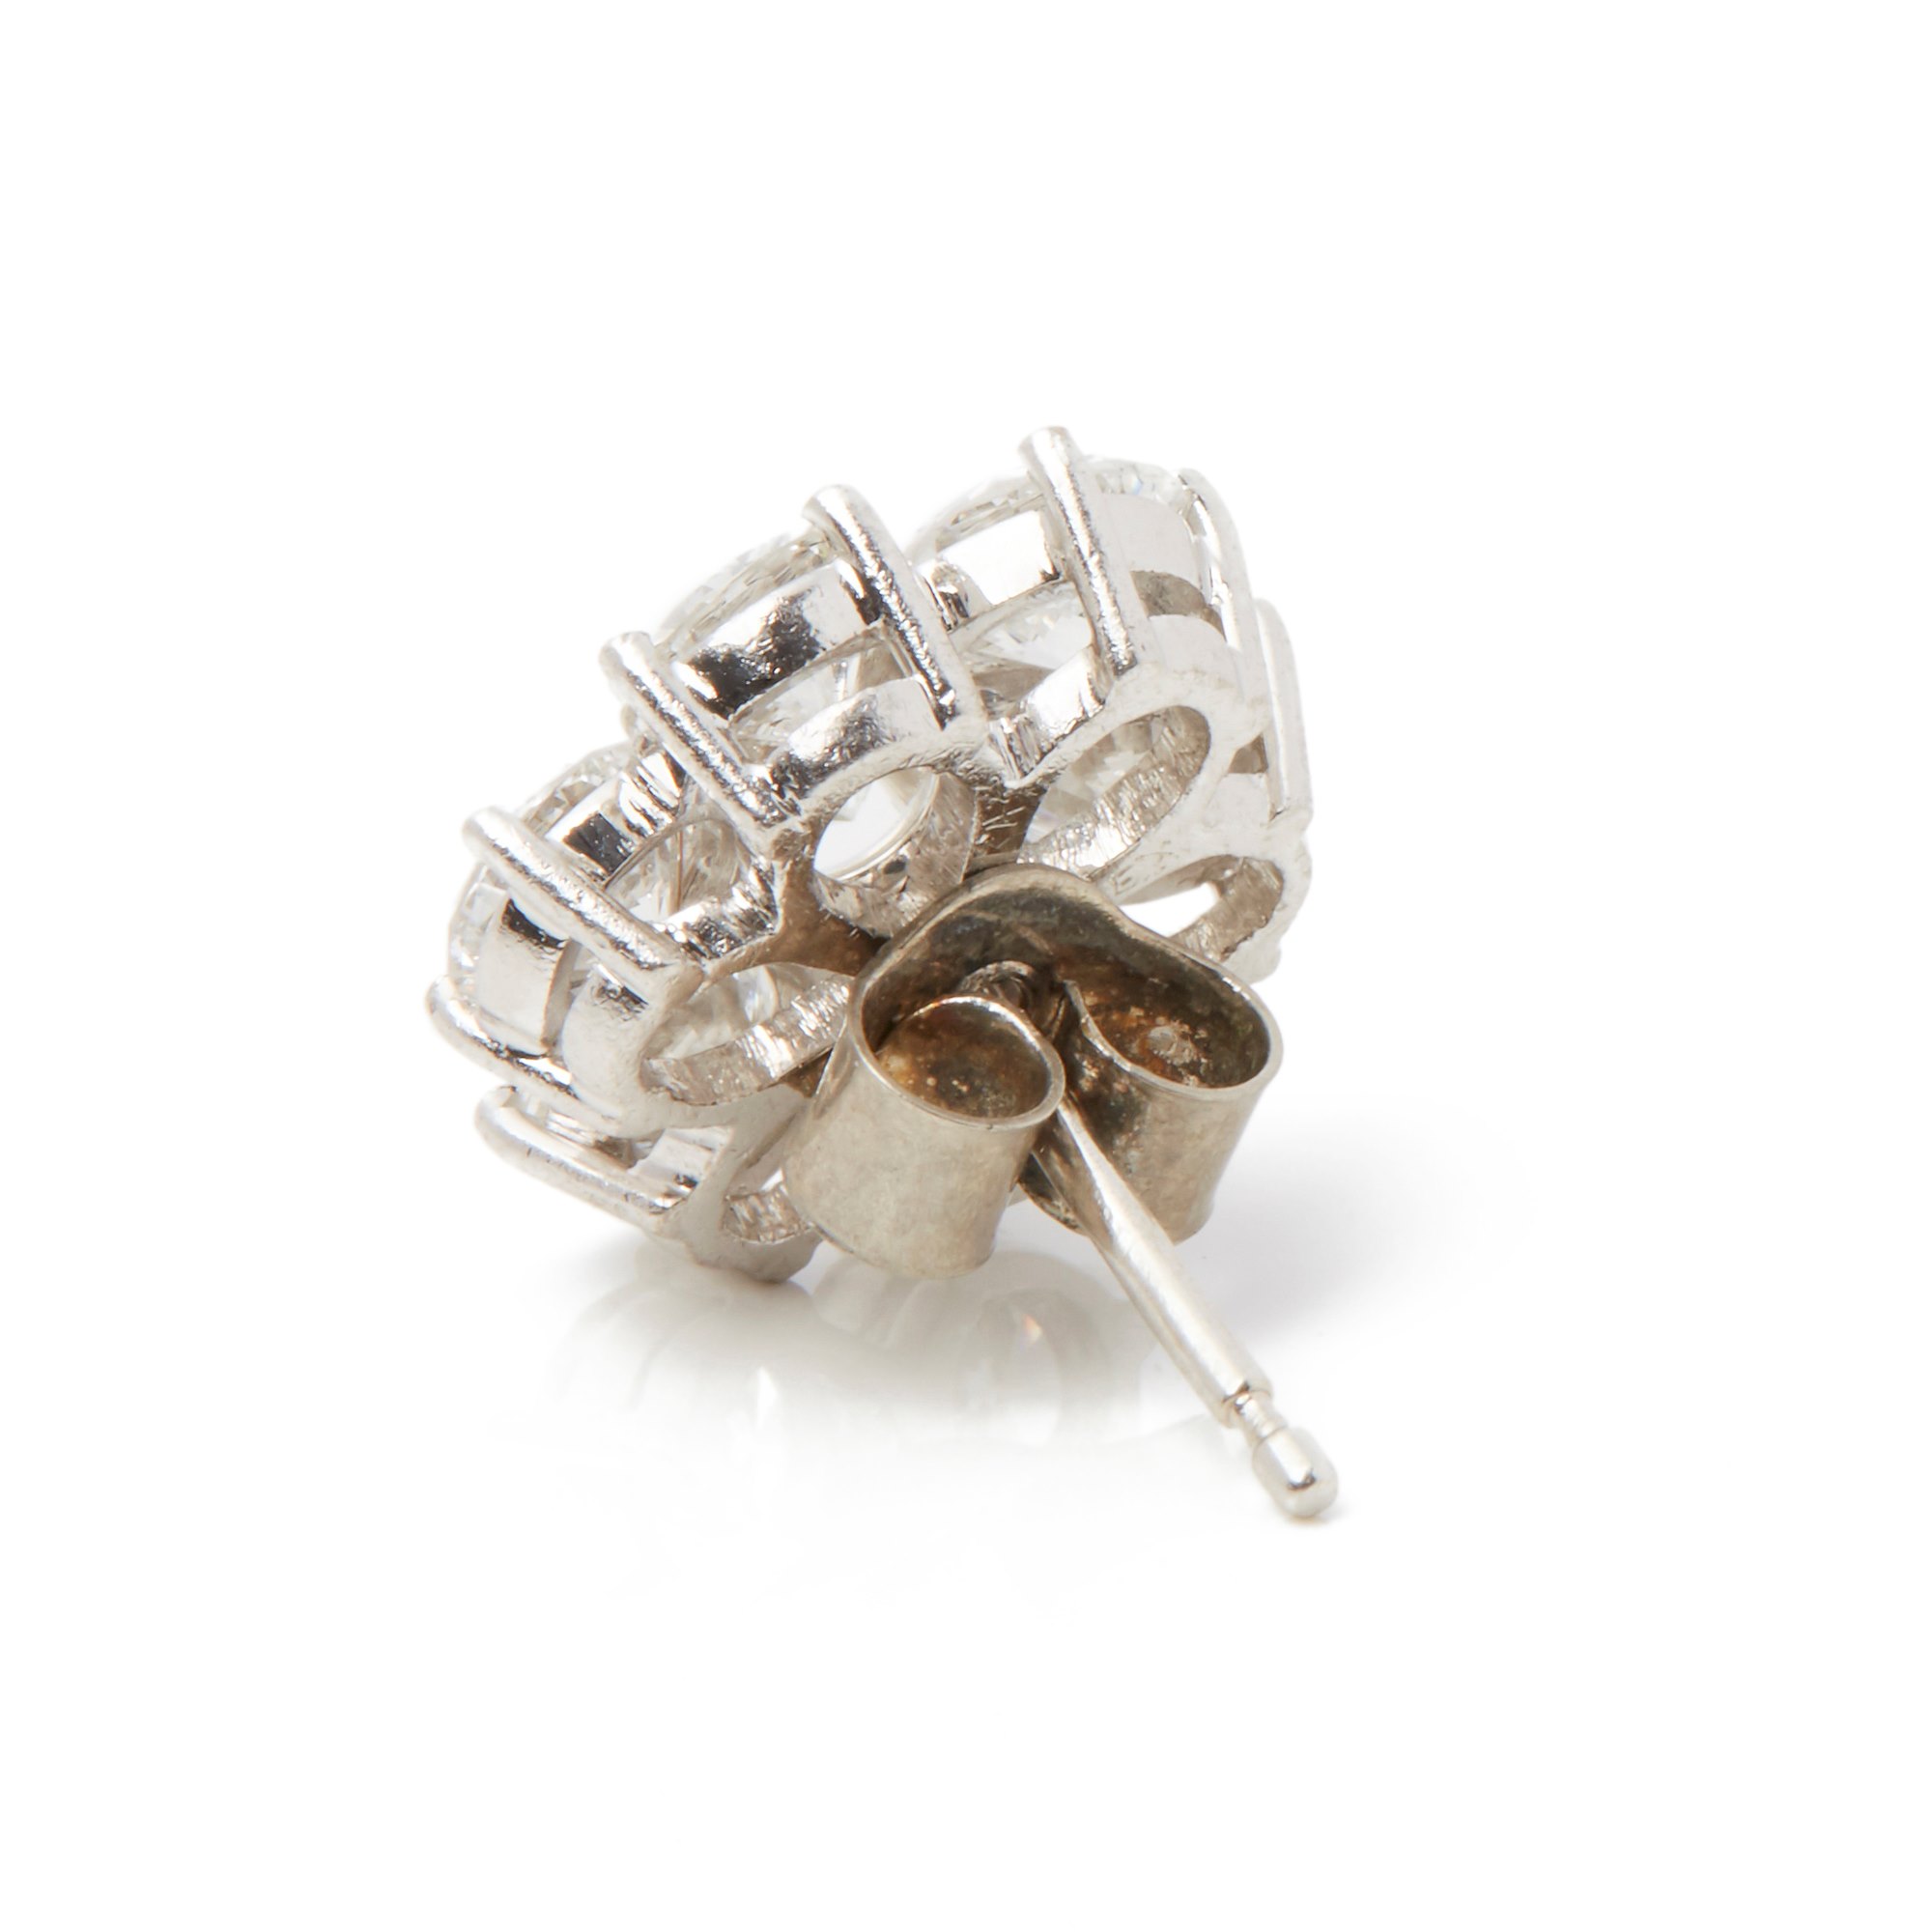 Boodles 18k White Gold Diamond Cluster Stud Earrings